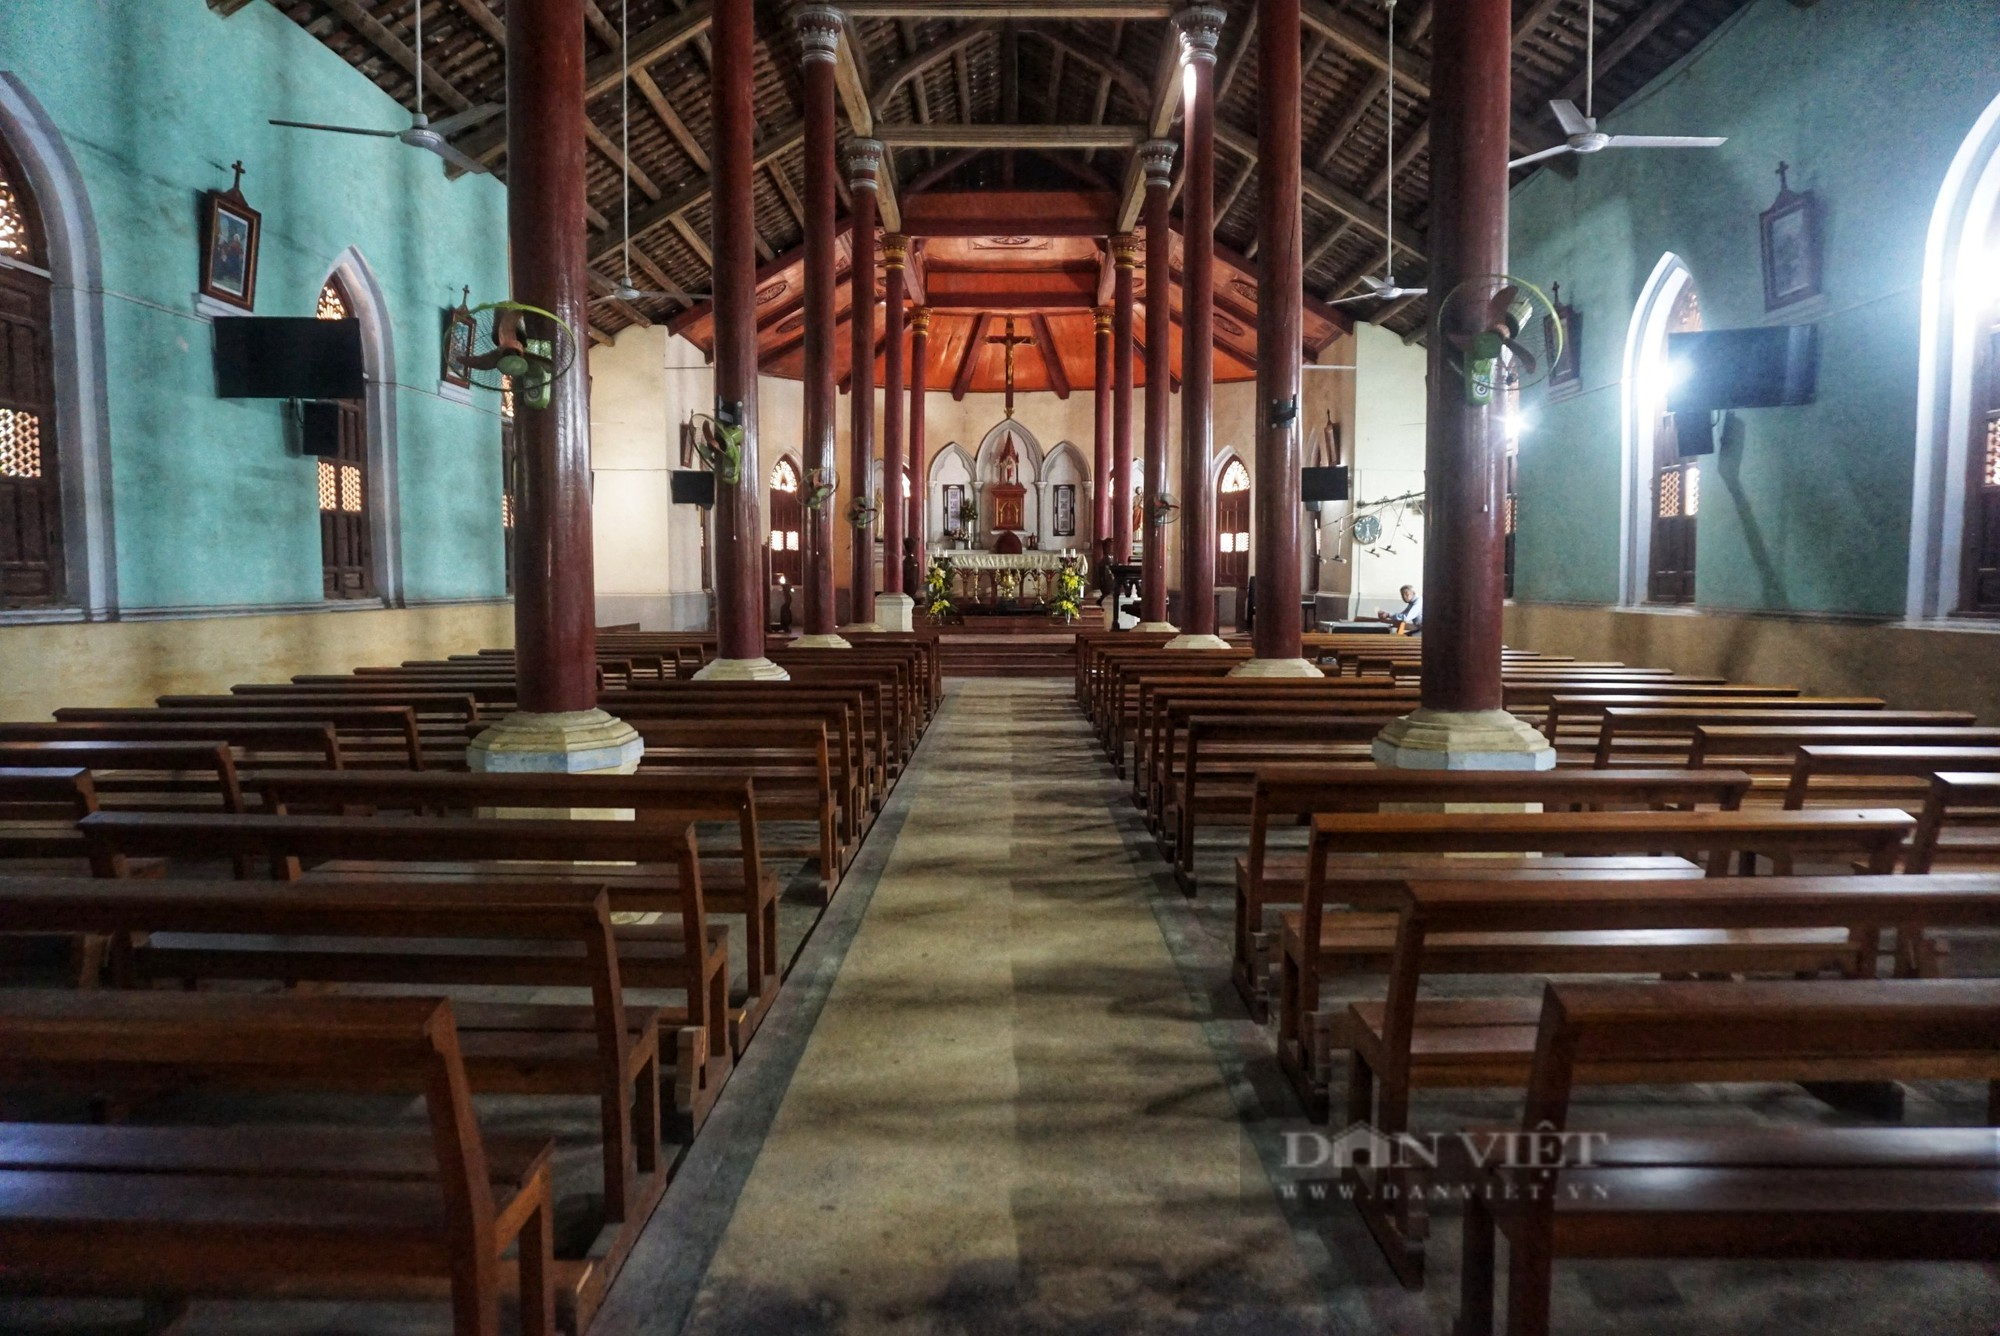 Nét đẹp cổ kính nhà thờ Pháp cổ hơn 100 tuổi tại Đà Nẵng - Ảnh 4.